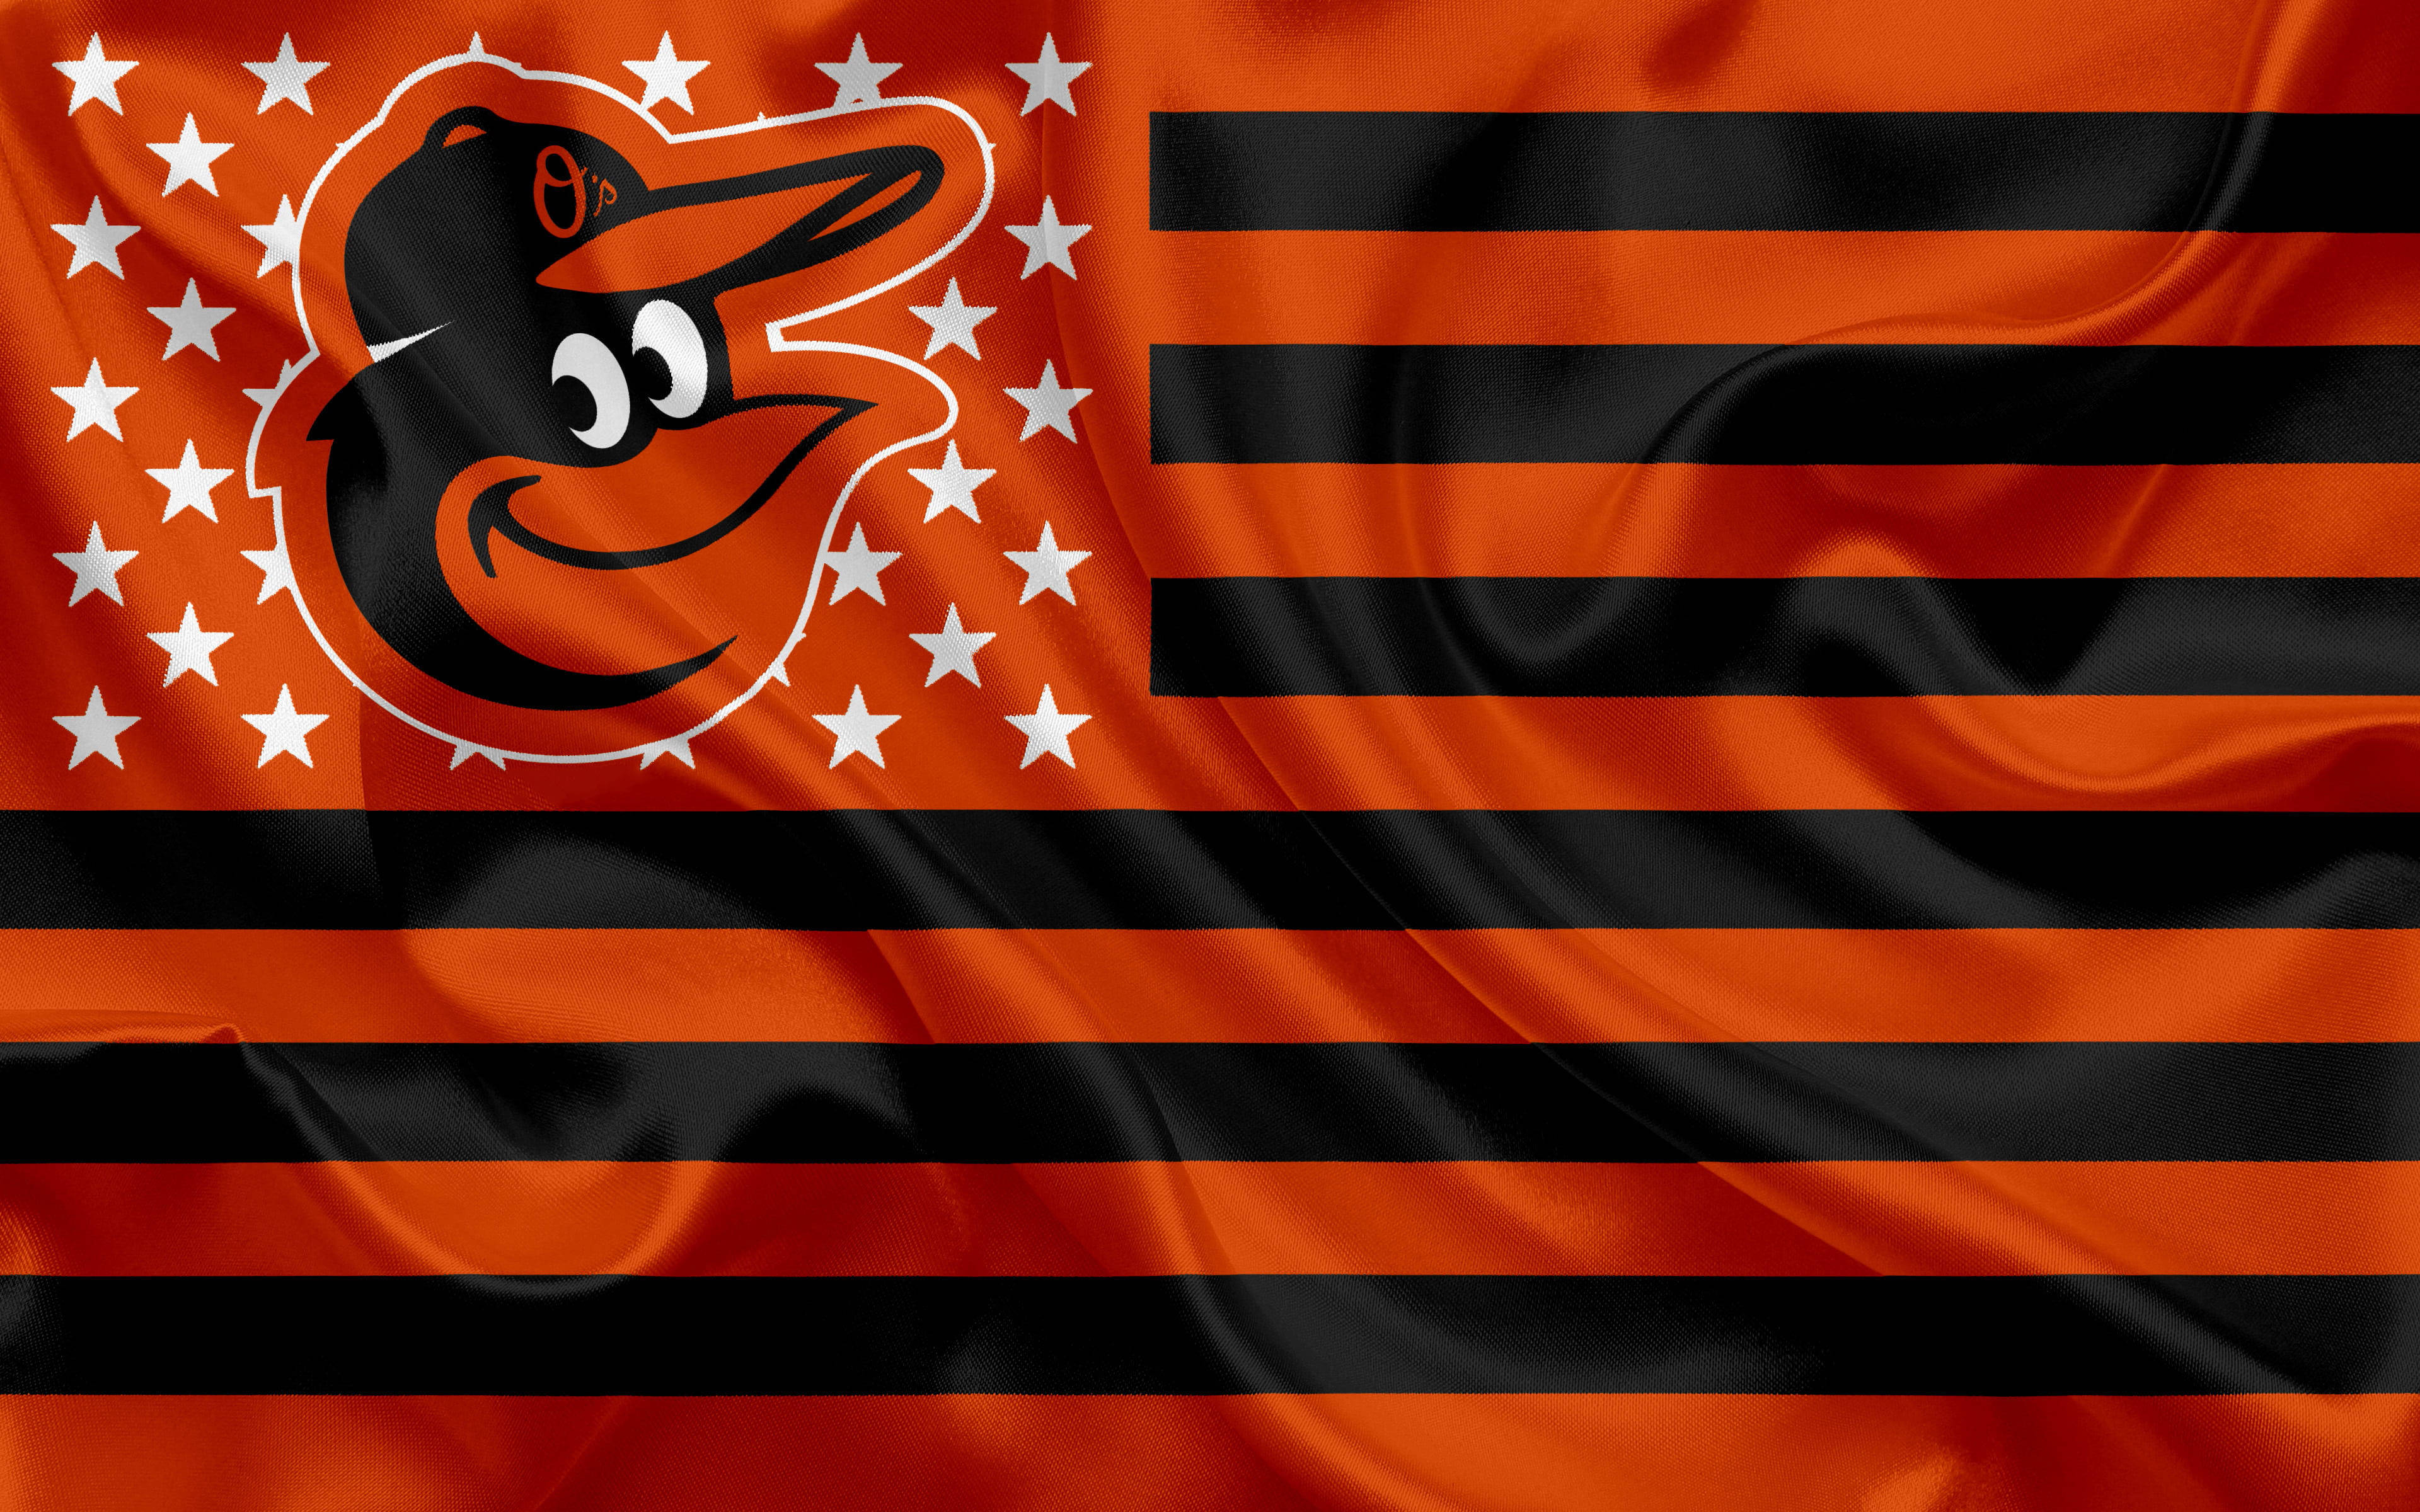 Baltimore Orioles Creative Flag Wallpaper